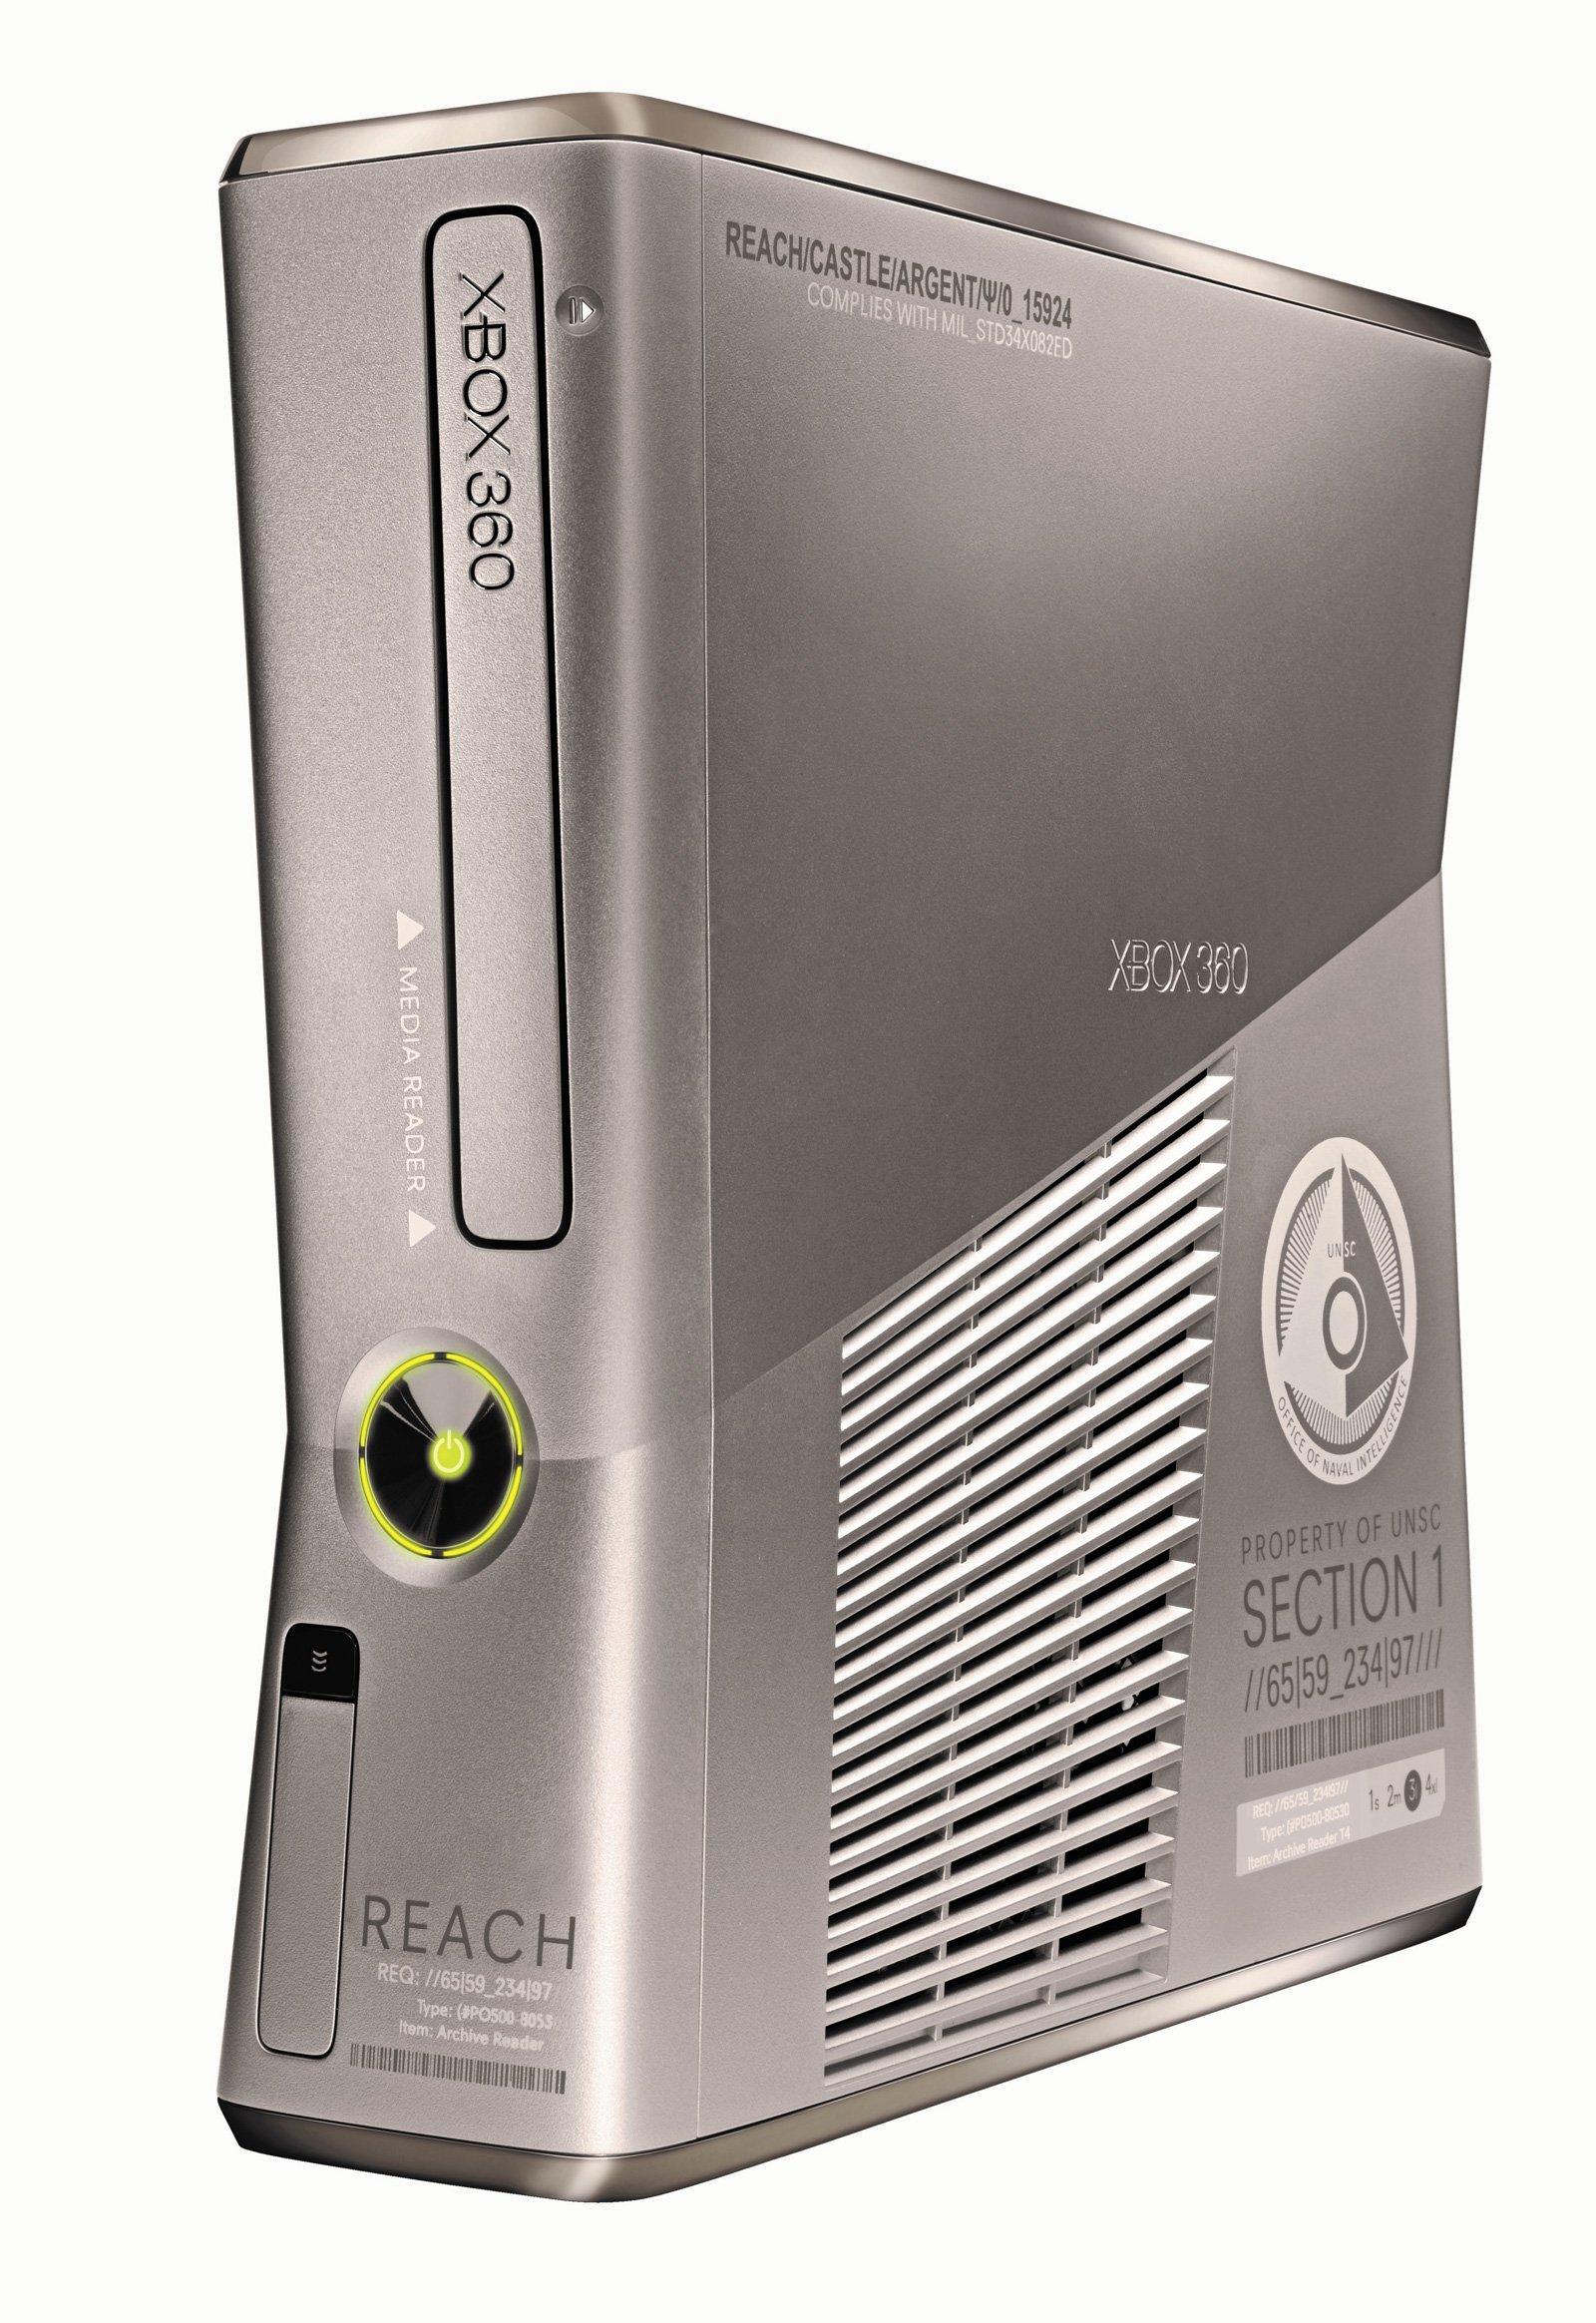 Microsoft Xbox 360 S Console Halo Reach 250GB